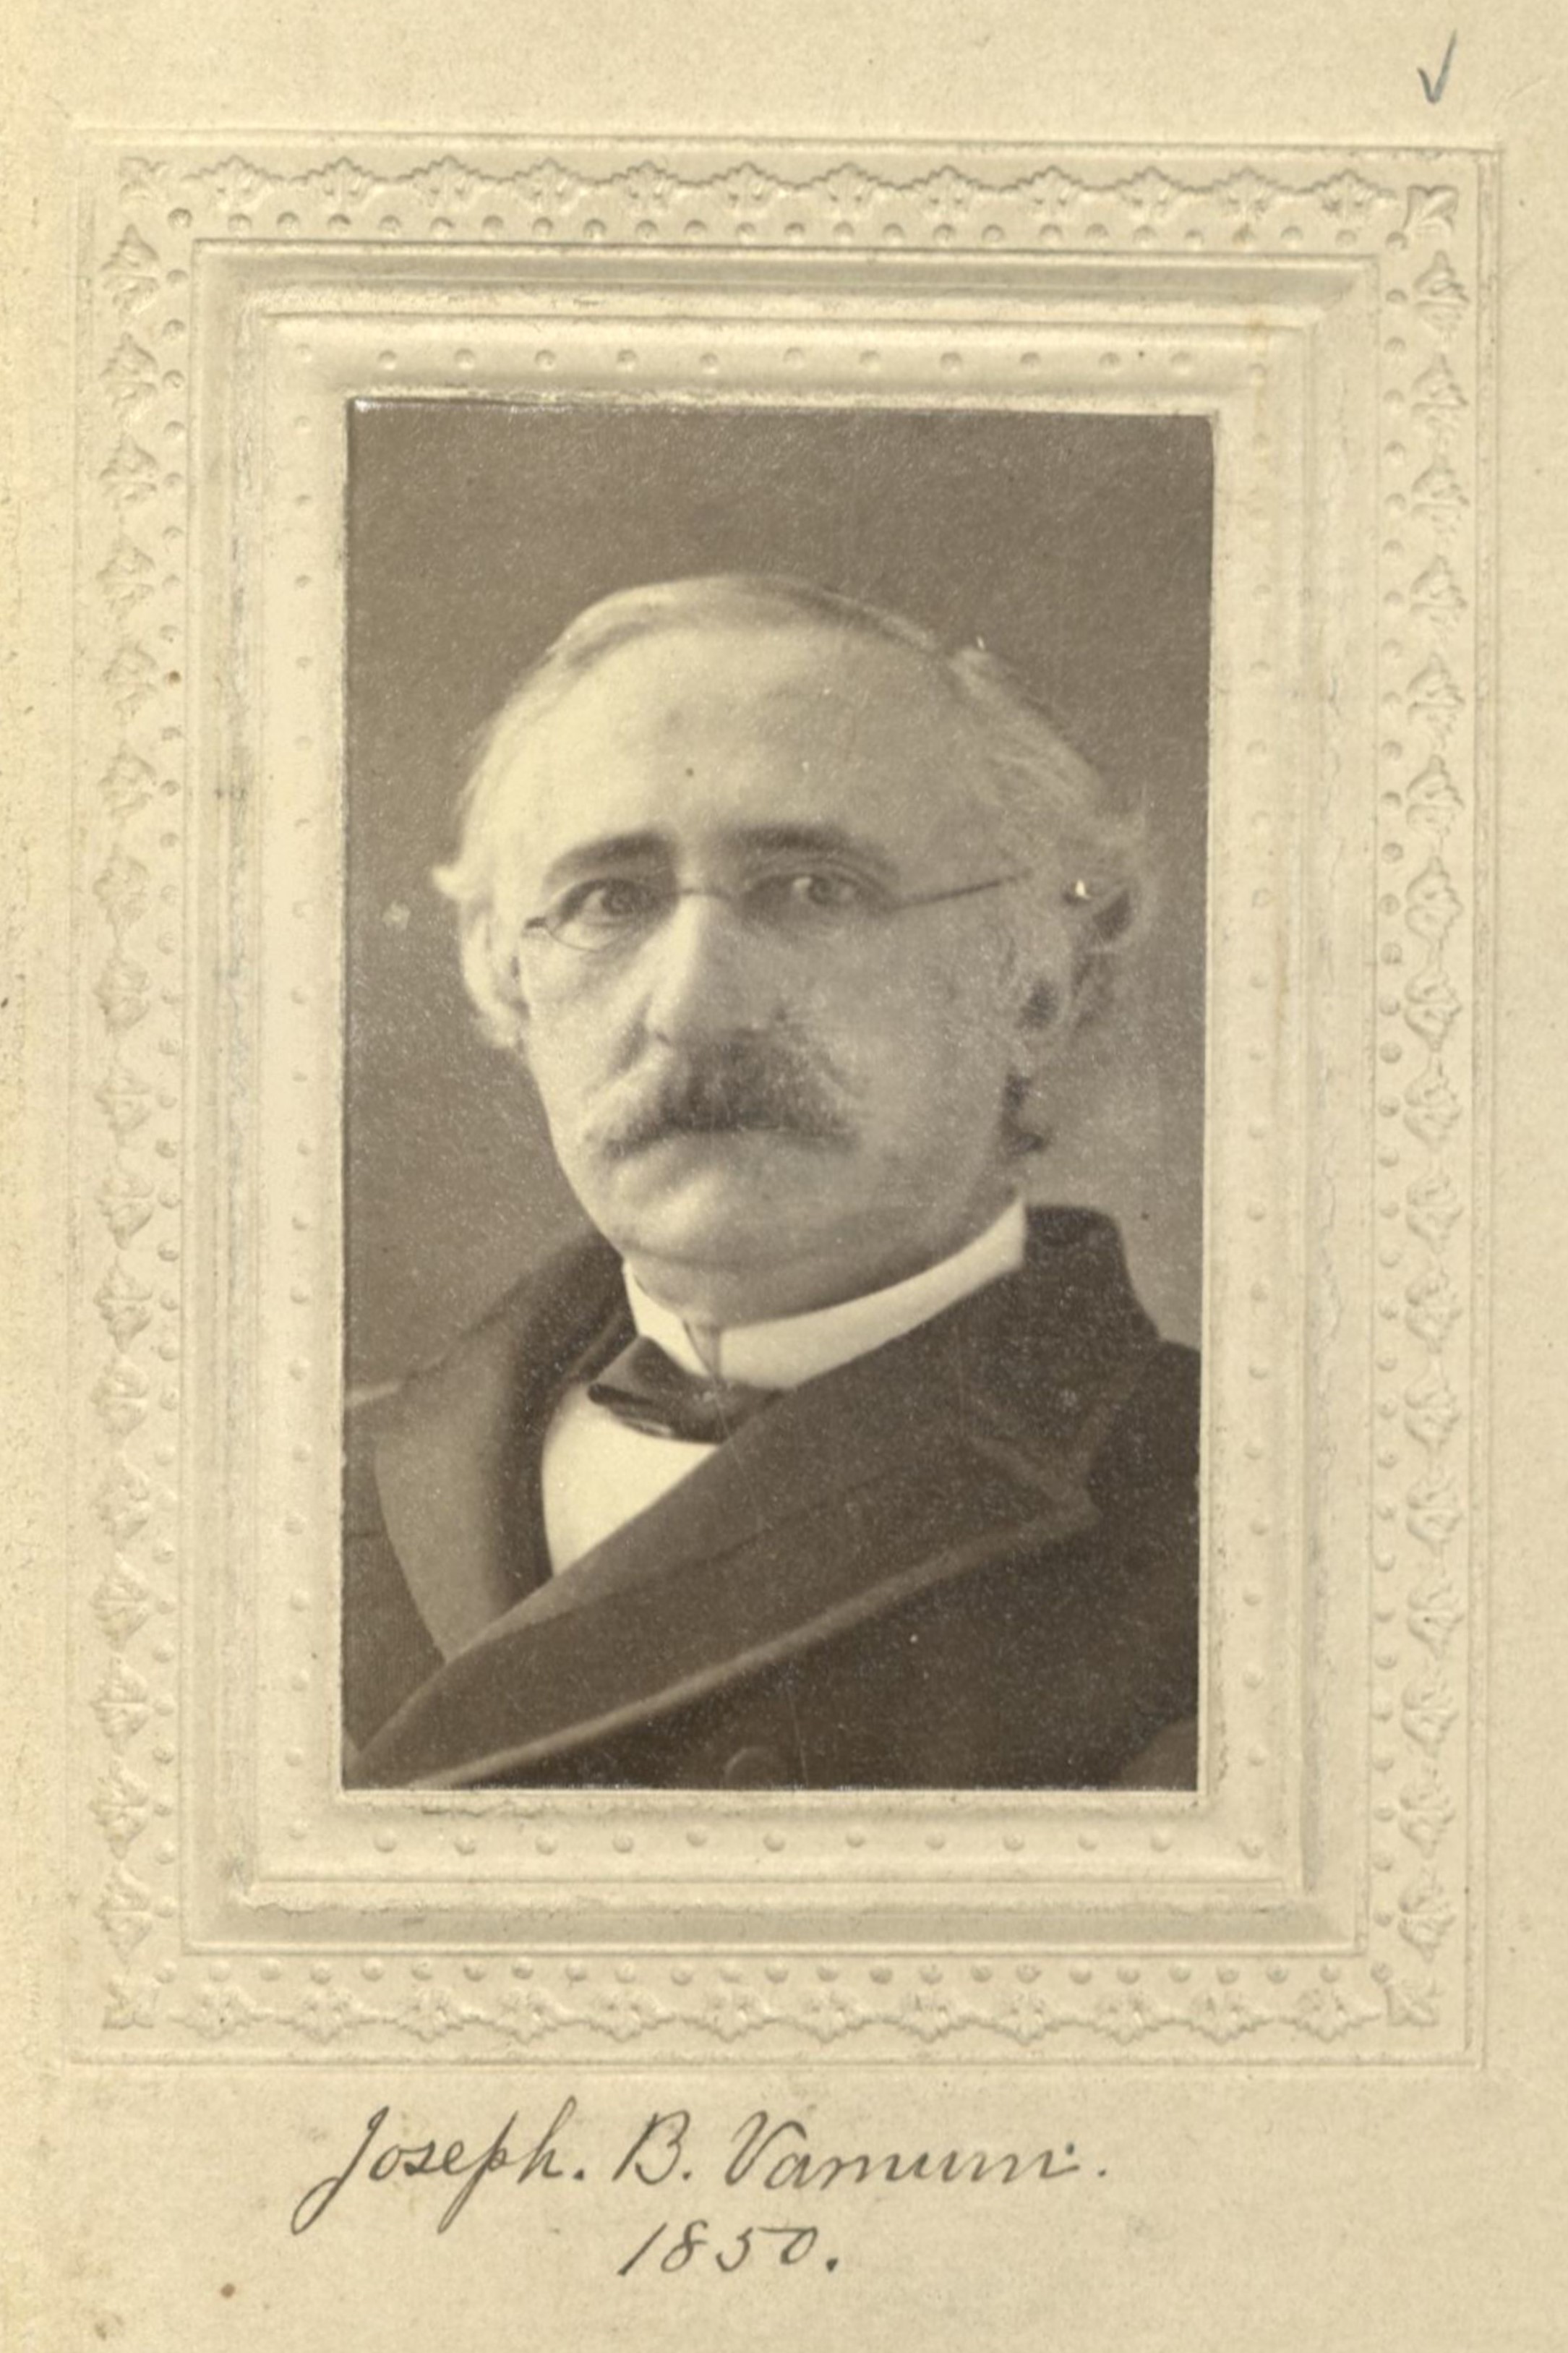 Member portrait of Joseph B. Varnum Jr.